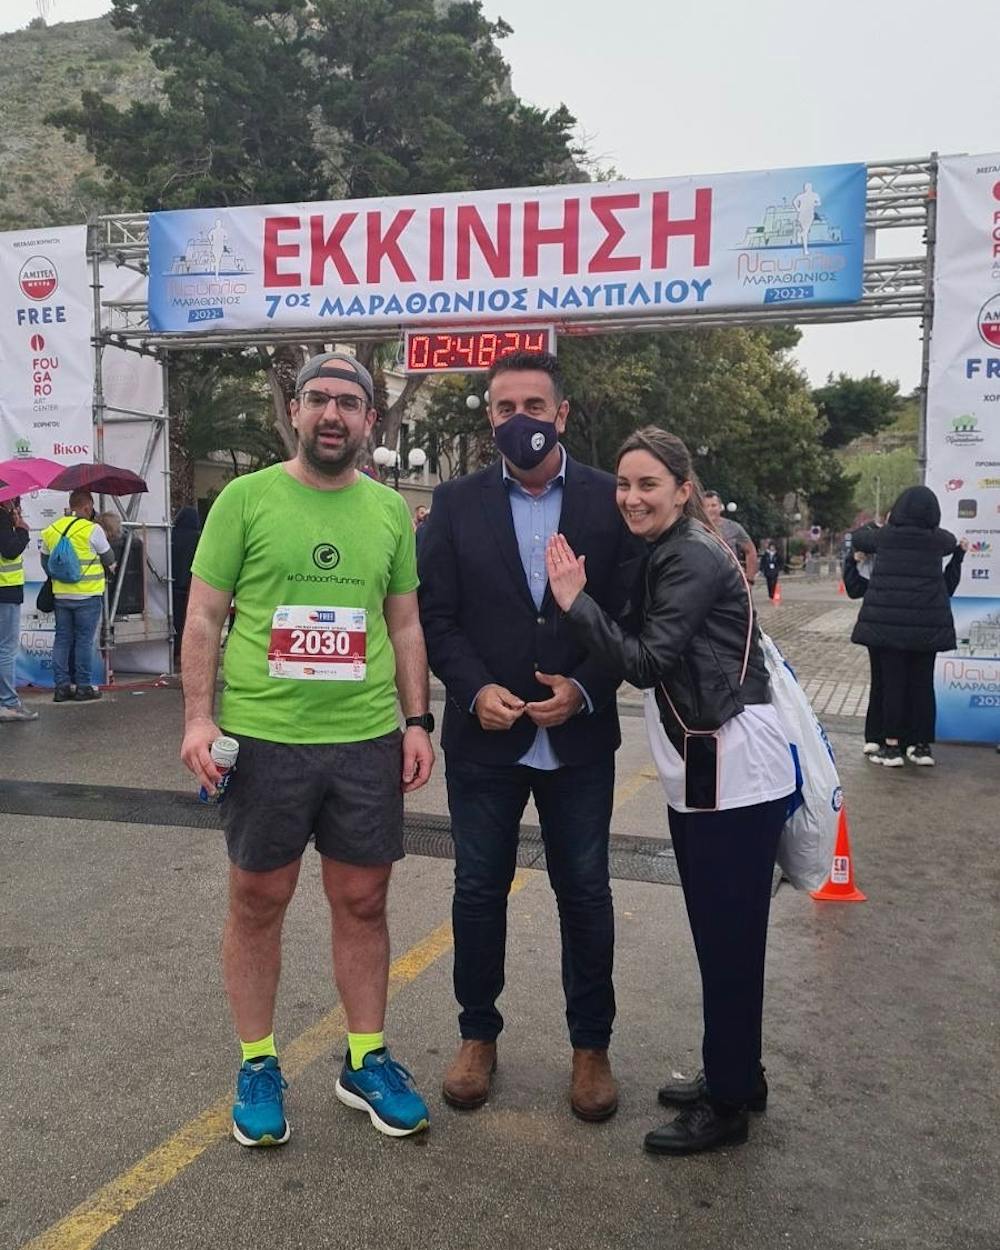 Ναύπλιο: Έτρεξε στον Ημιμαραθώνιο και έκανε πρόταση γάμου στην αγαπημένου του στον τερματισμό! (Pics) runbeat.gr 